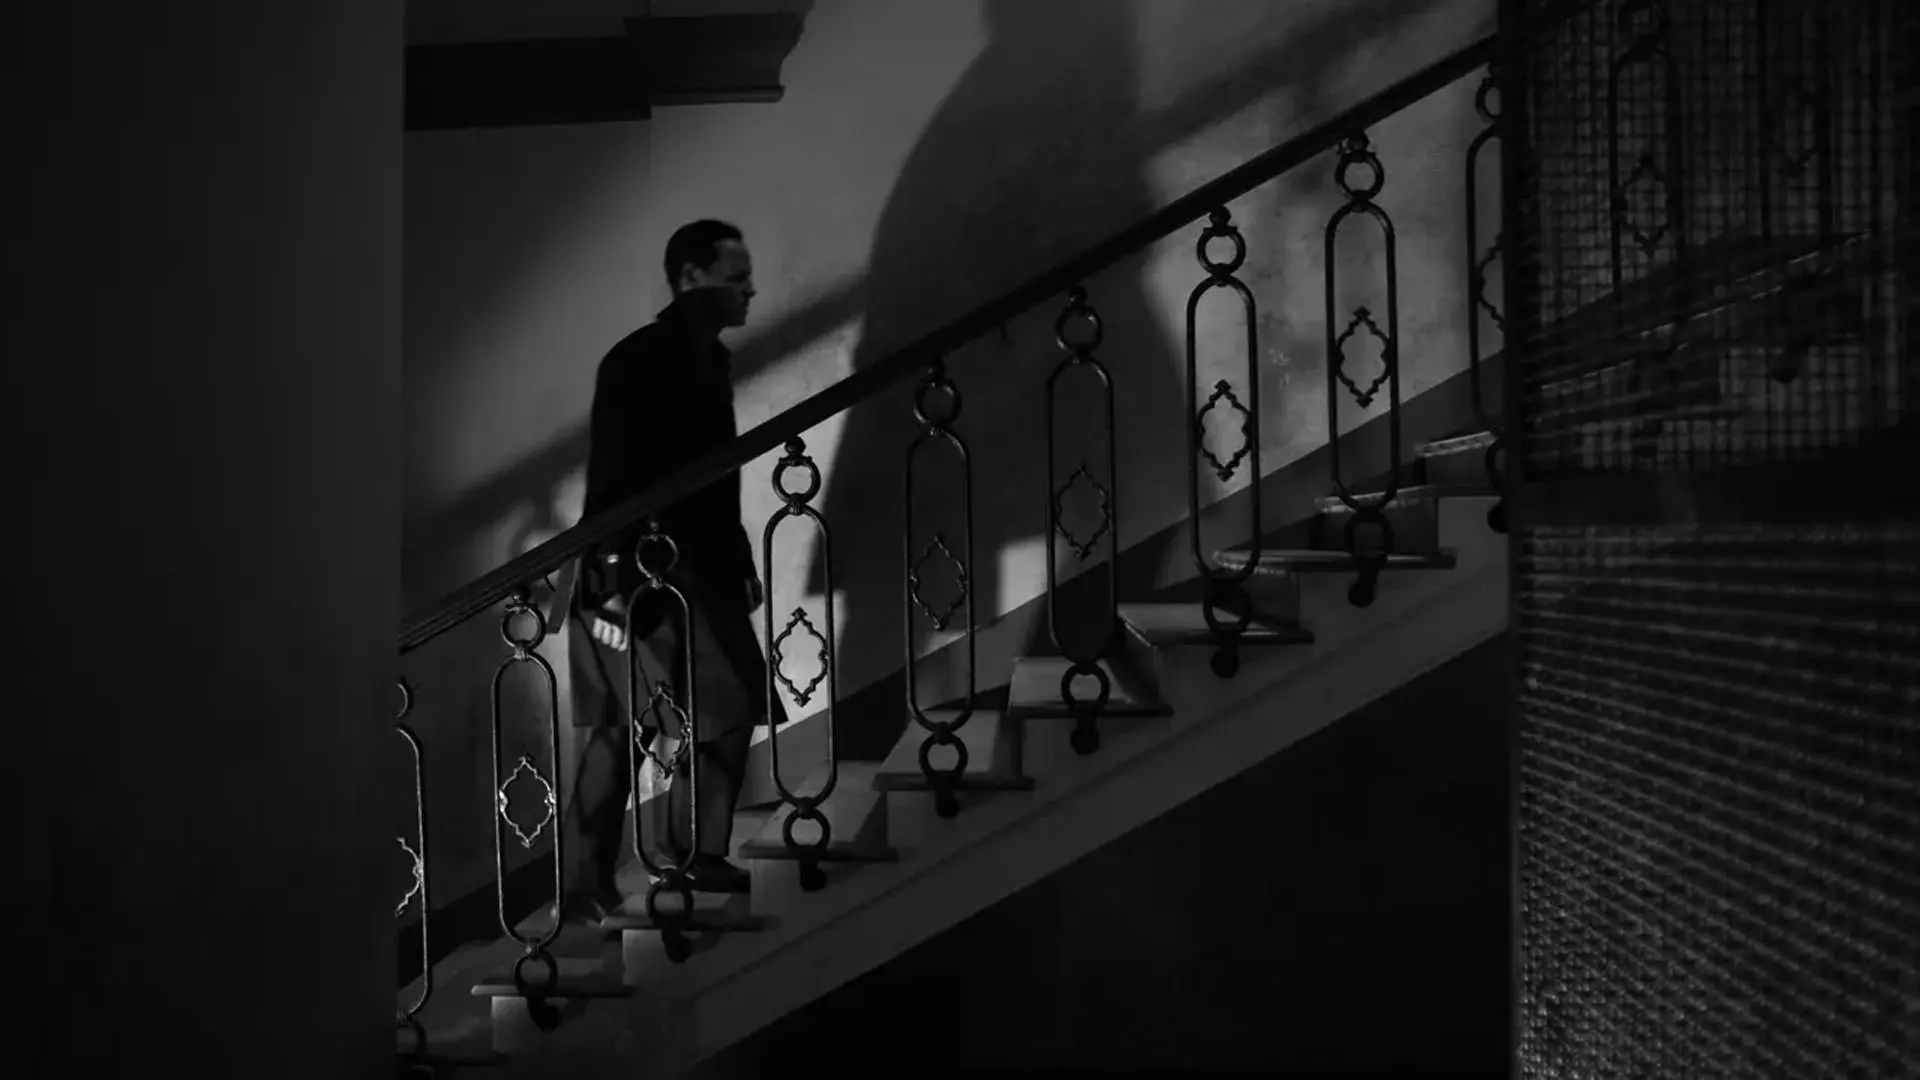 در این تصویر سیاه و سفید از سریال ریپلی استیون زیلیان، اندرو اسکات با سایه بزرگش پشت سرش از پله ها بالا می رود.